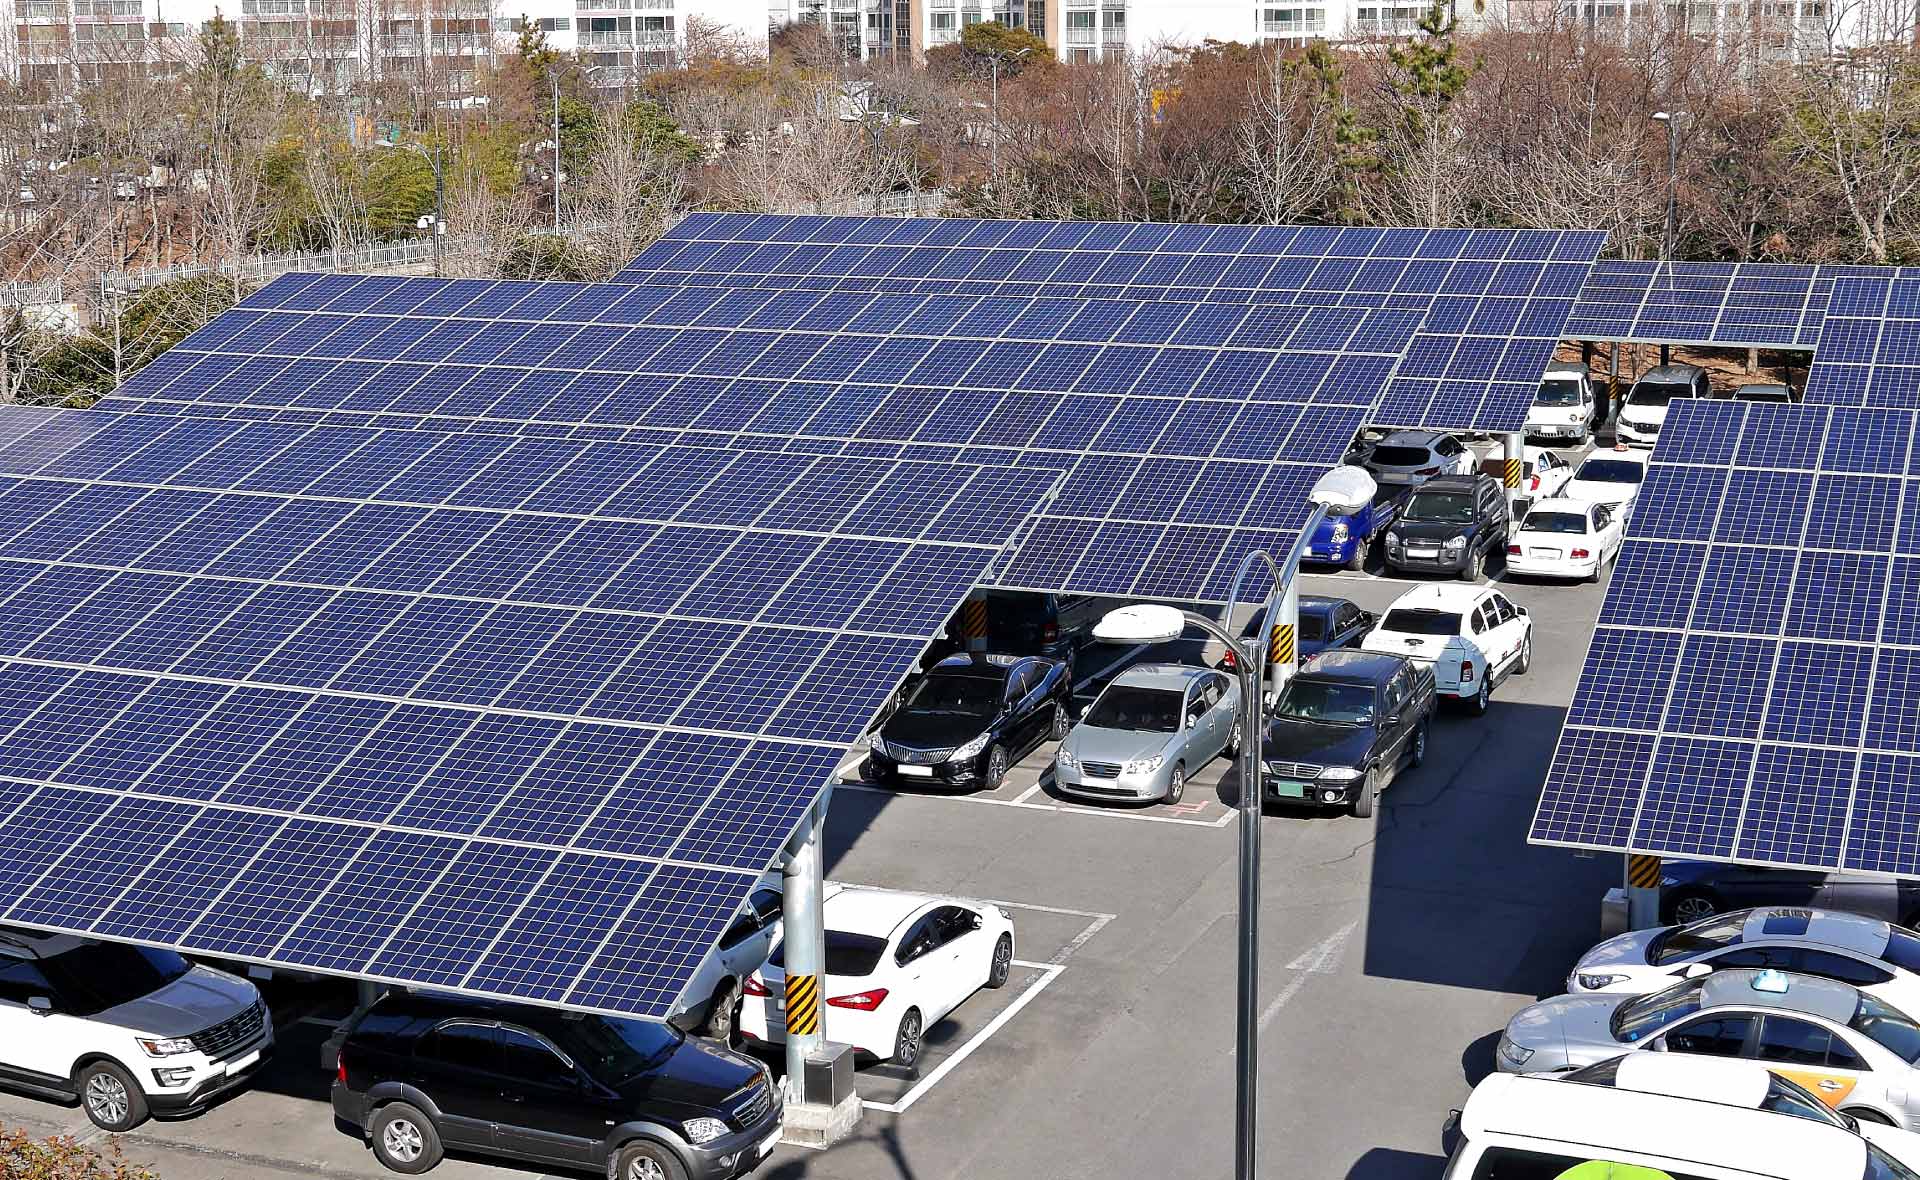 coche_electrico_paneles-solares-placas-movilidad-sostenible-sostenibilidad-gasolineras-electricas-bbva